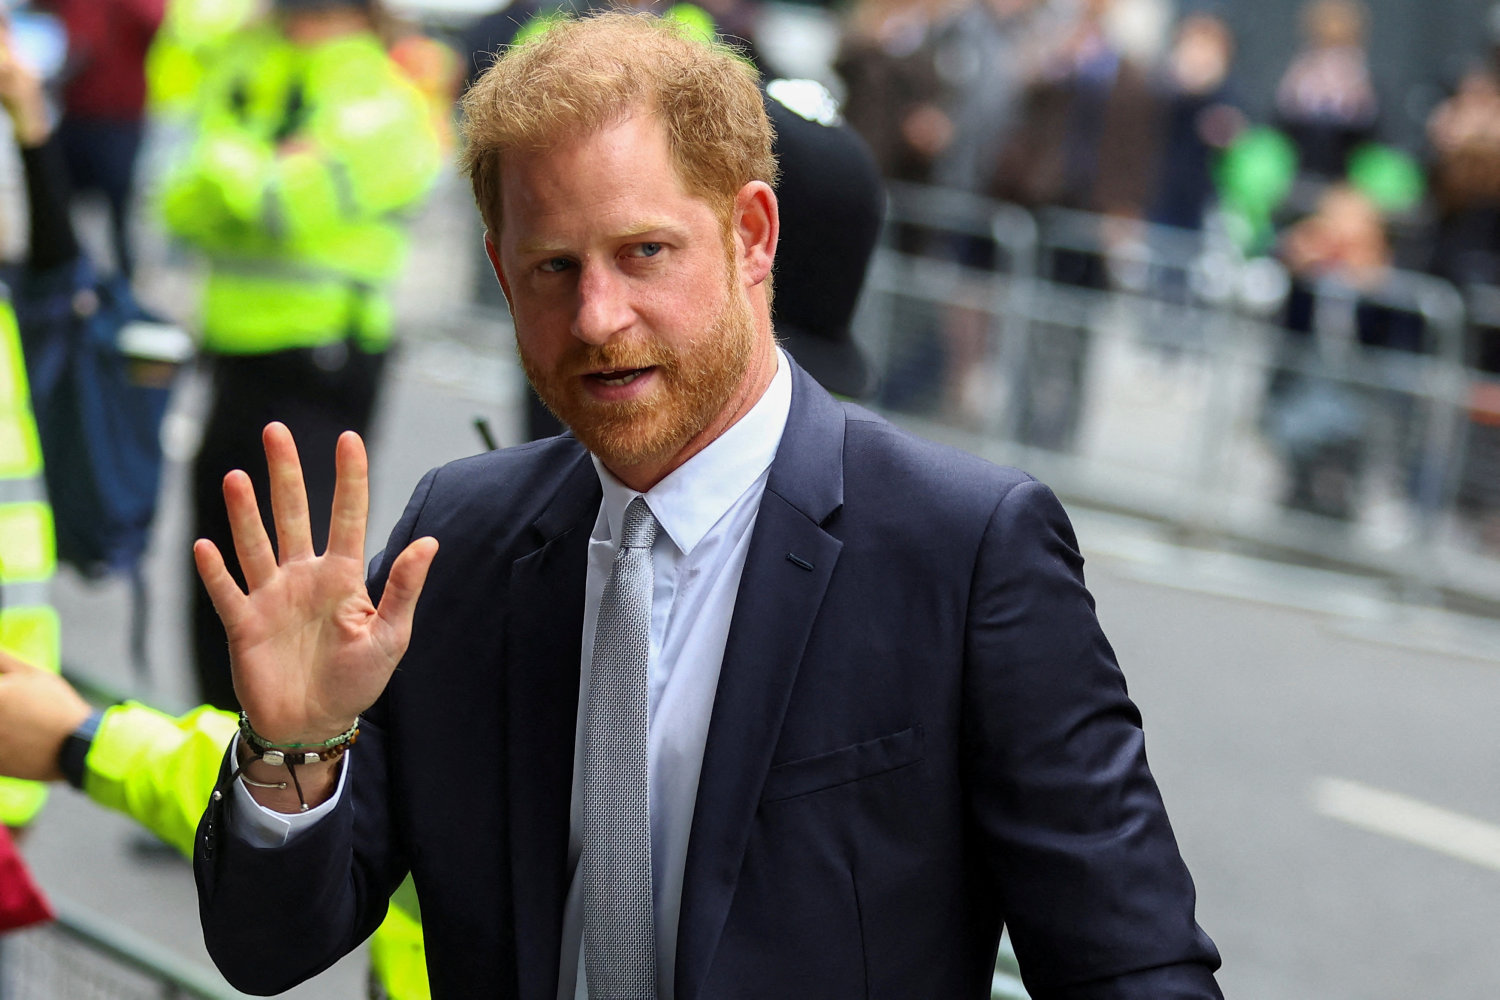 prins harry er ankommet til london for af besøge kræftsyg far